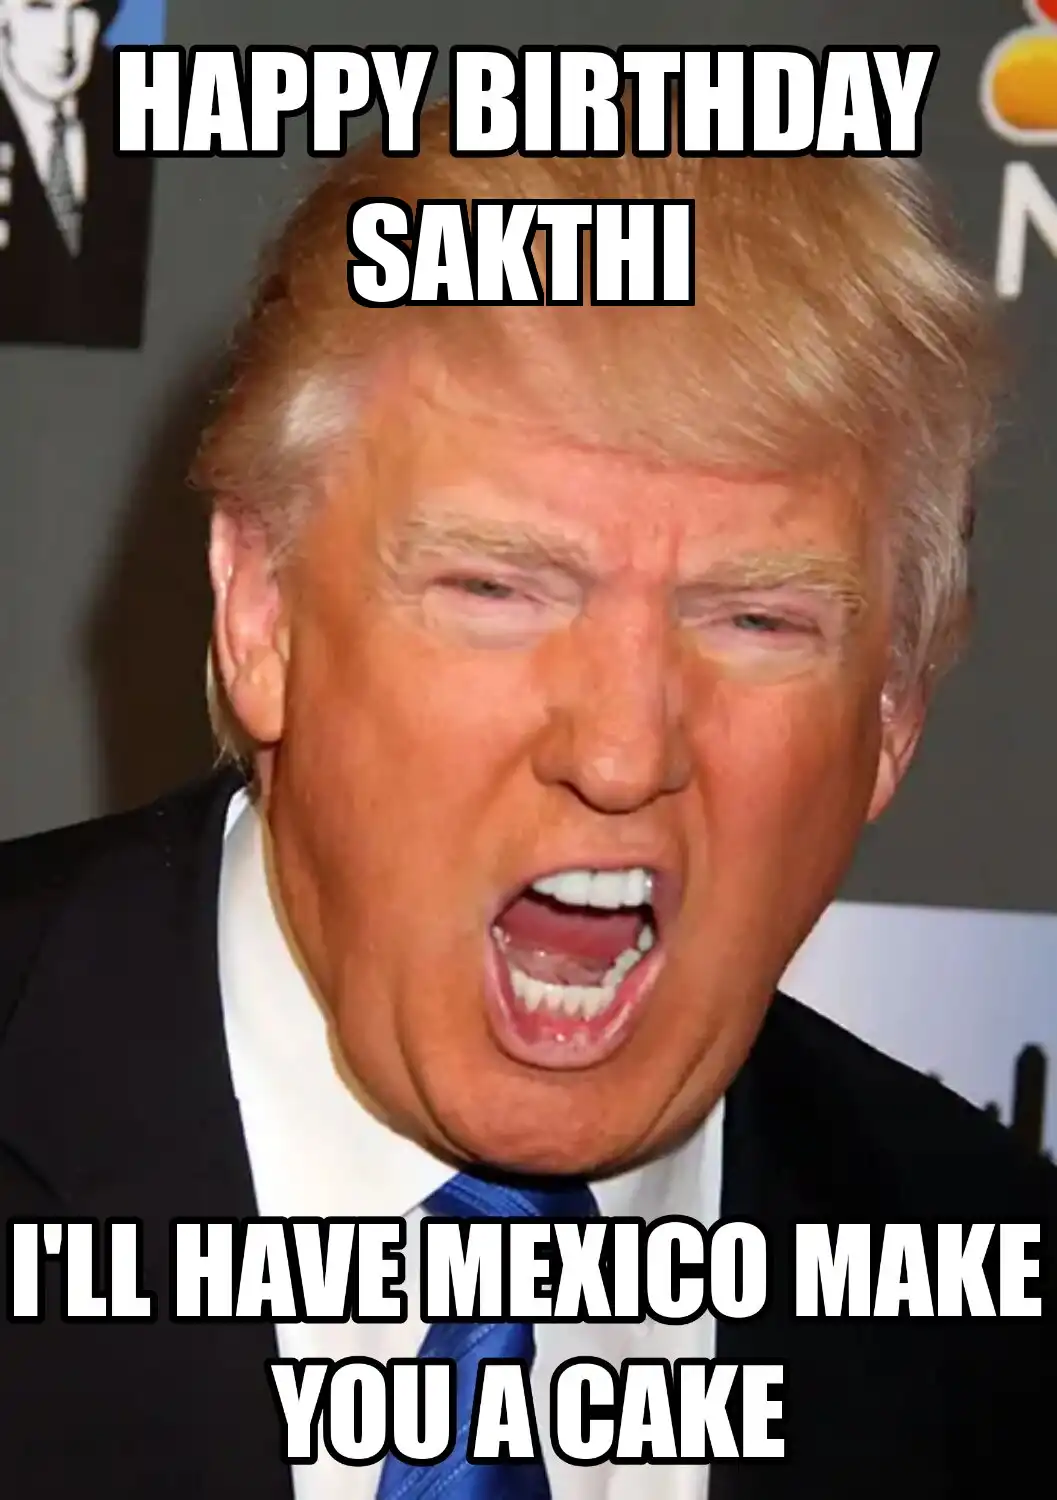 Happy Birthday Sakthi Mexico Make You A Cake Meme